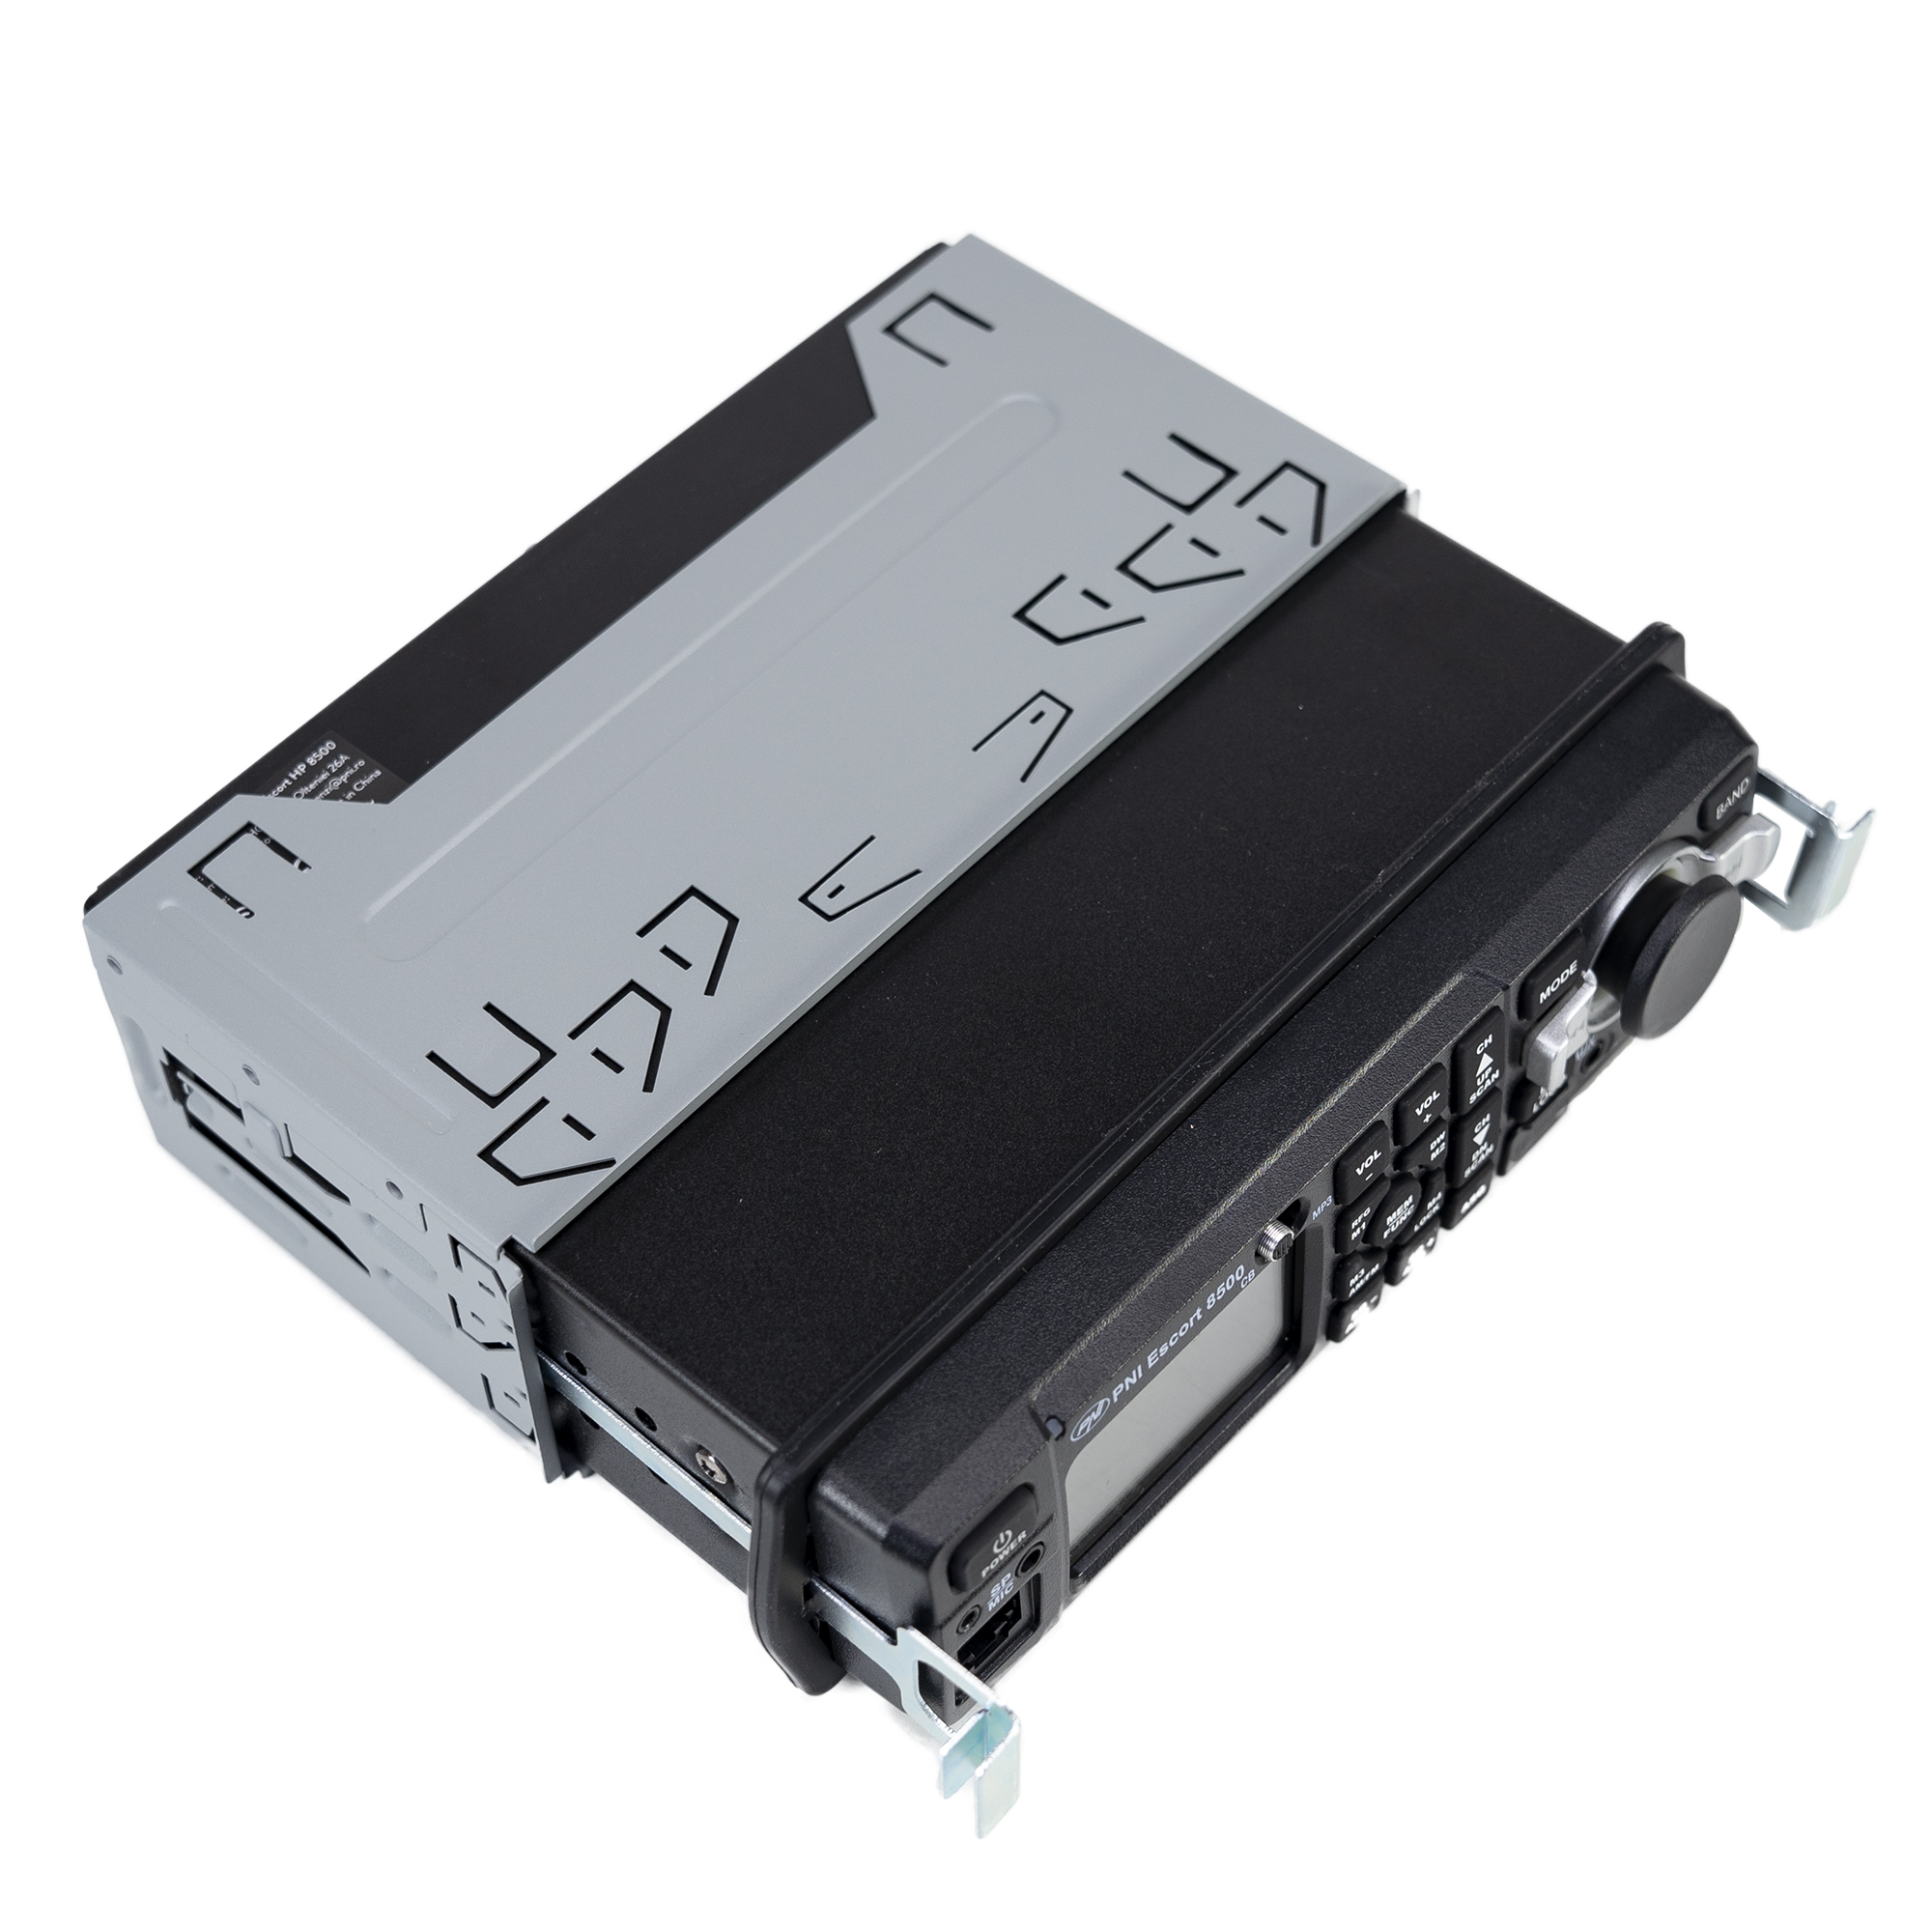 PNI Escort HP 8500 émetteur-récepteur CB avec radio FM + MP3